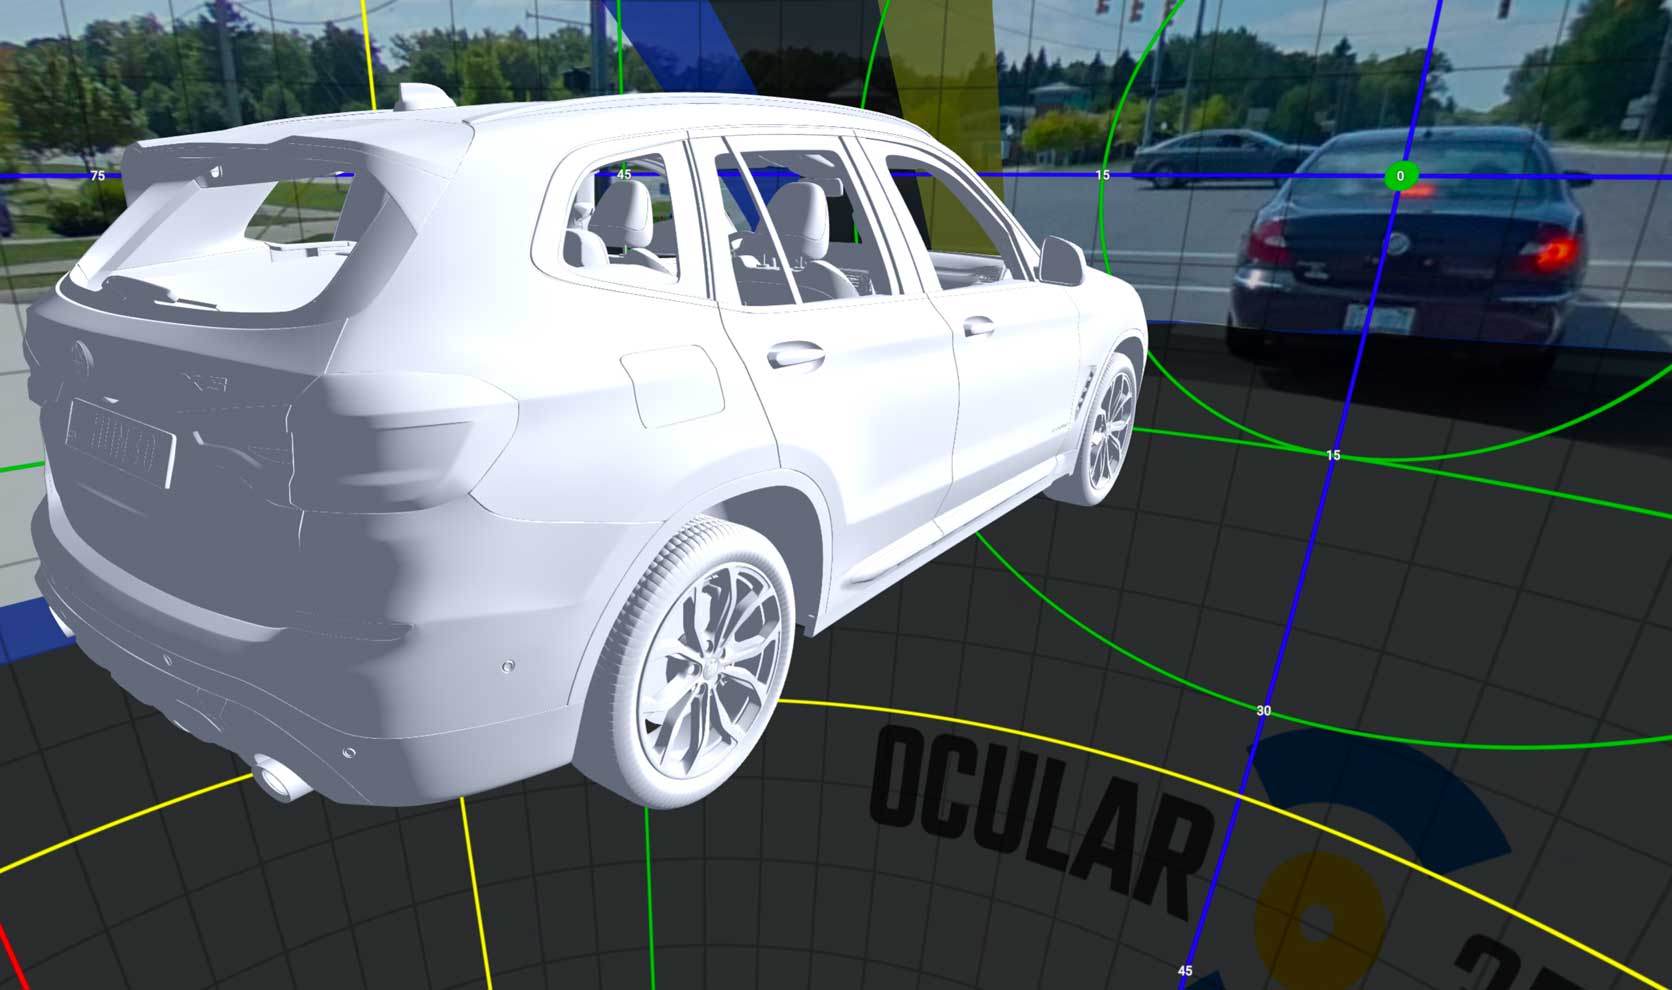 Ocular3D Automotive OEM Value Figure 4